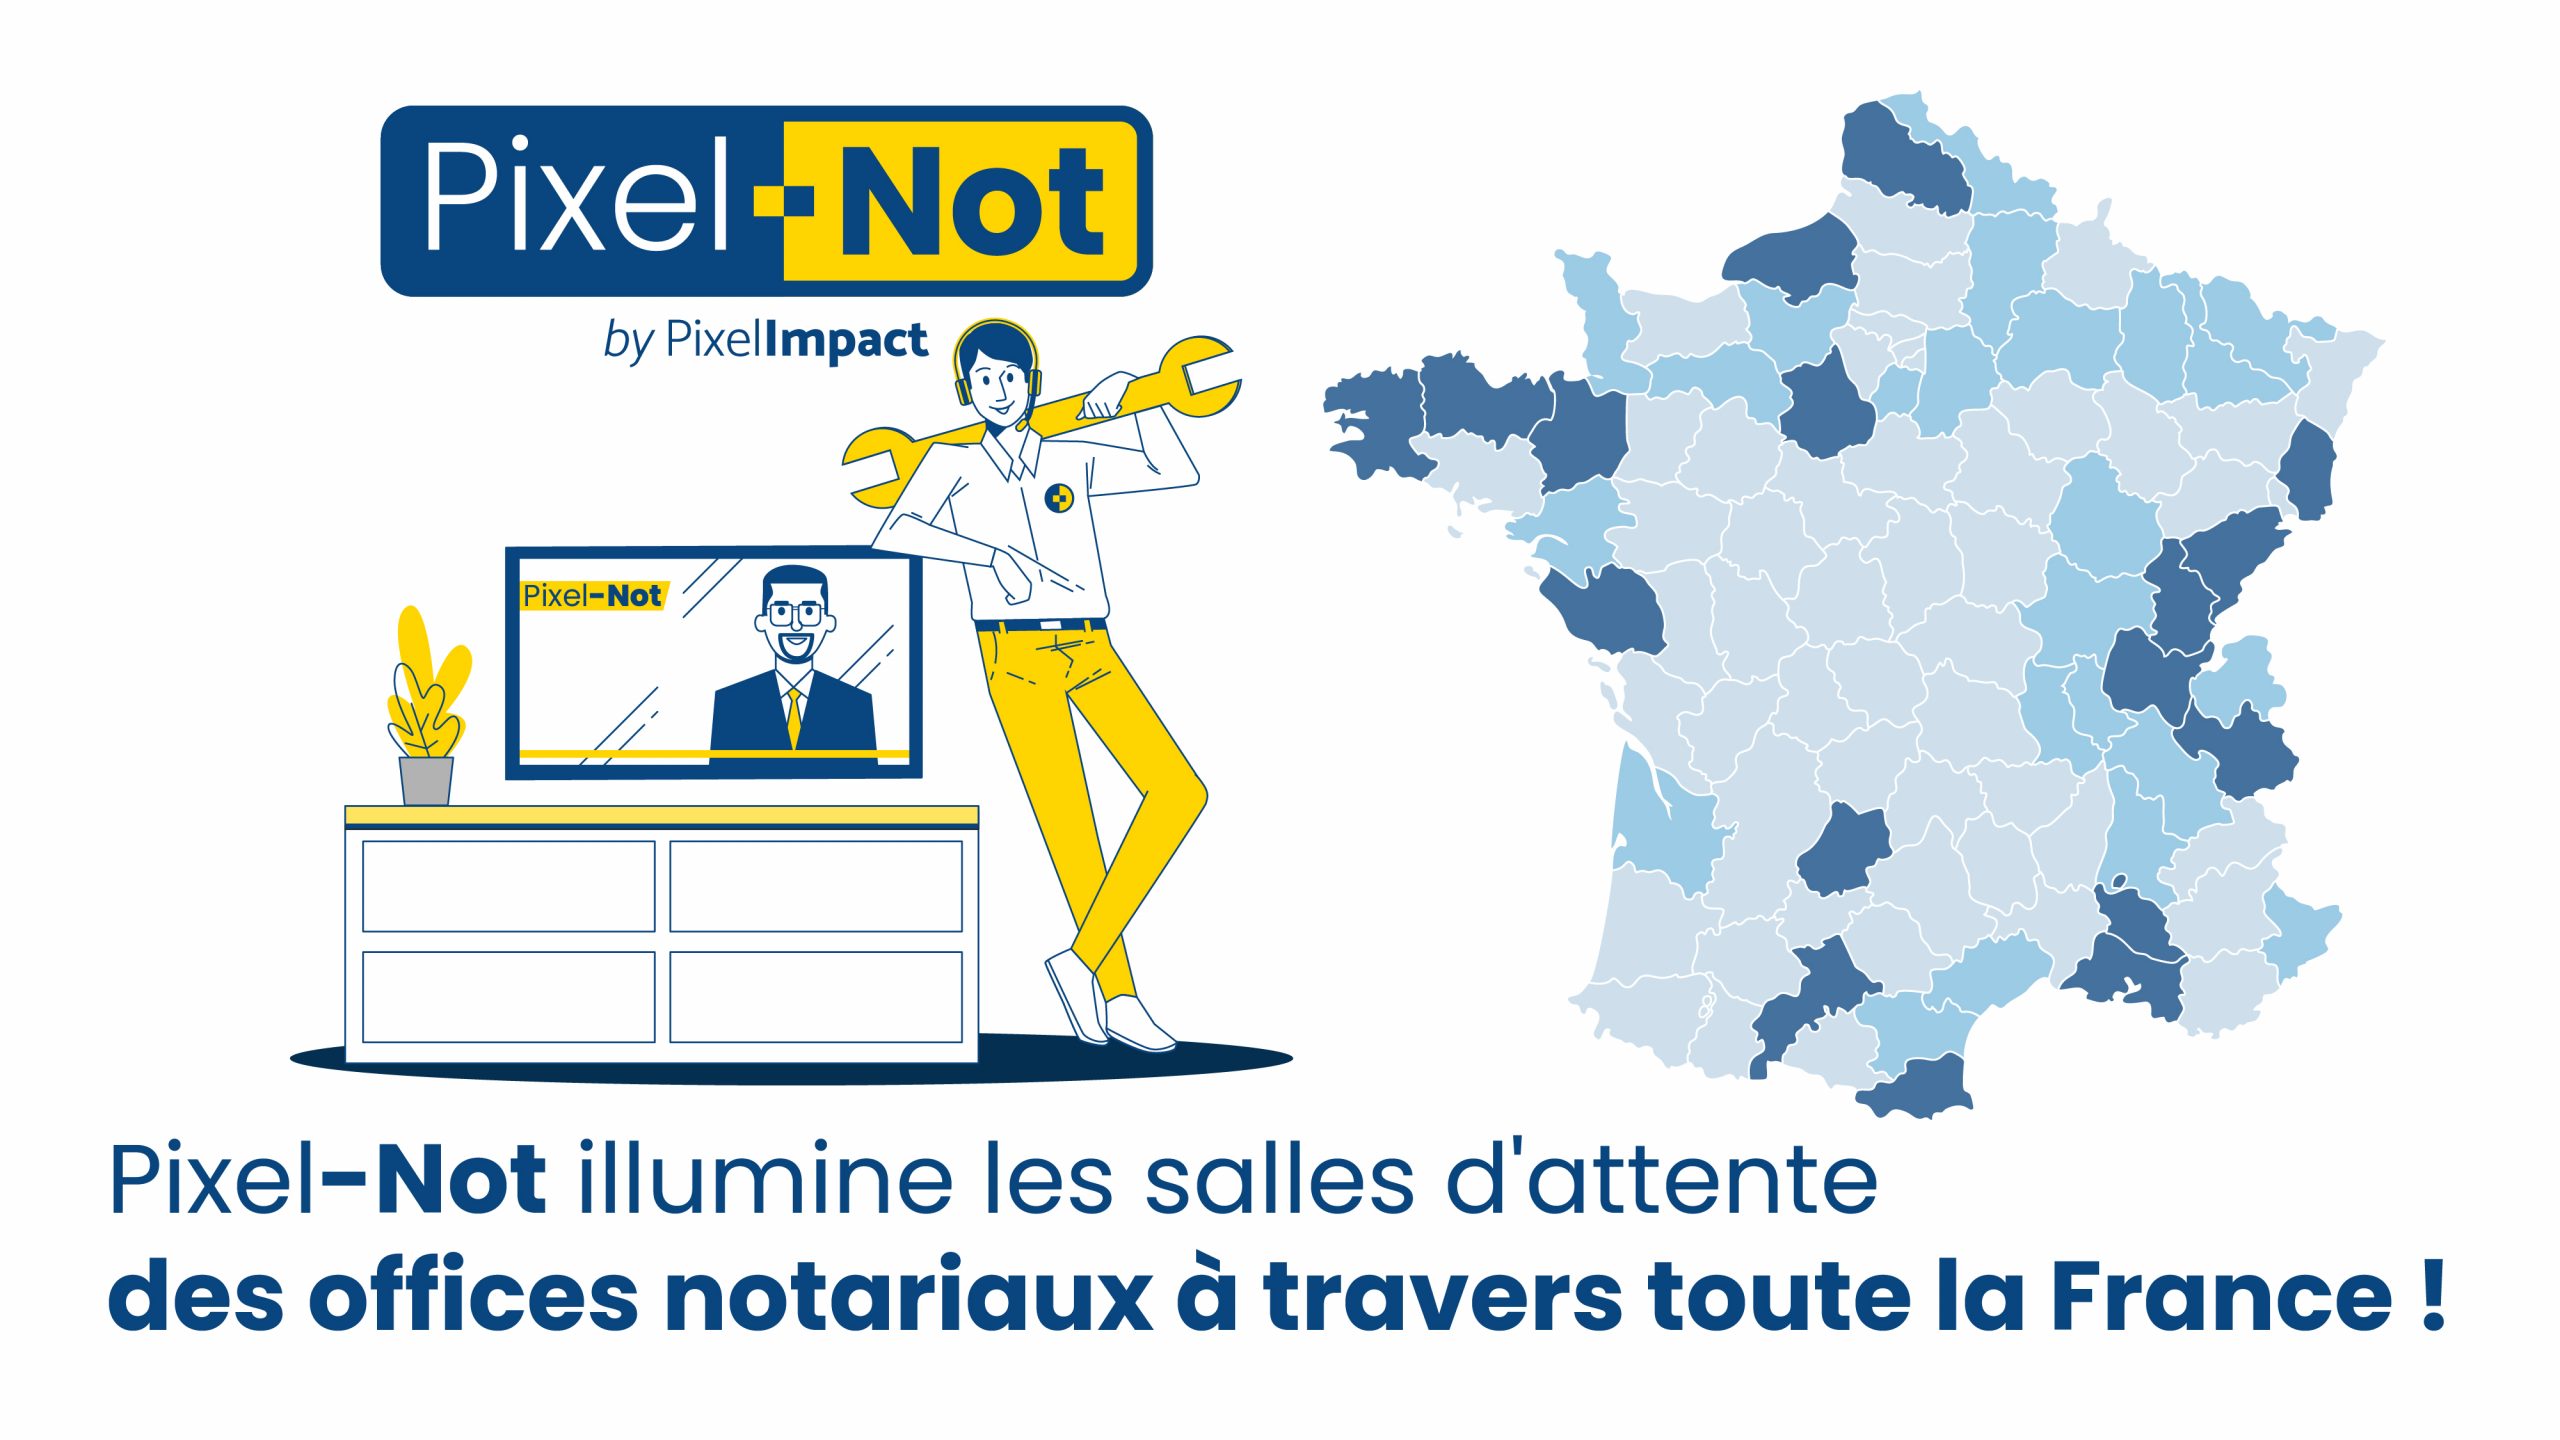 Pixel-Not illumine les salles d'attente des Offices notariaux à travers toute la France